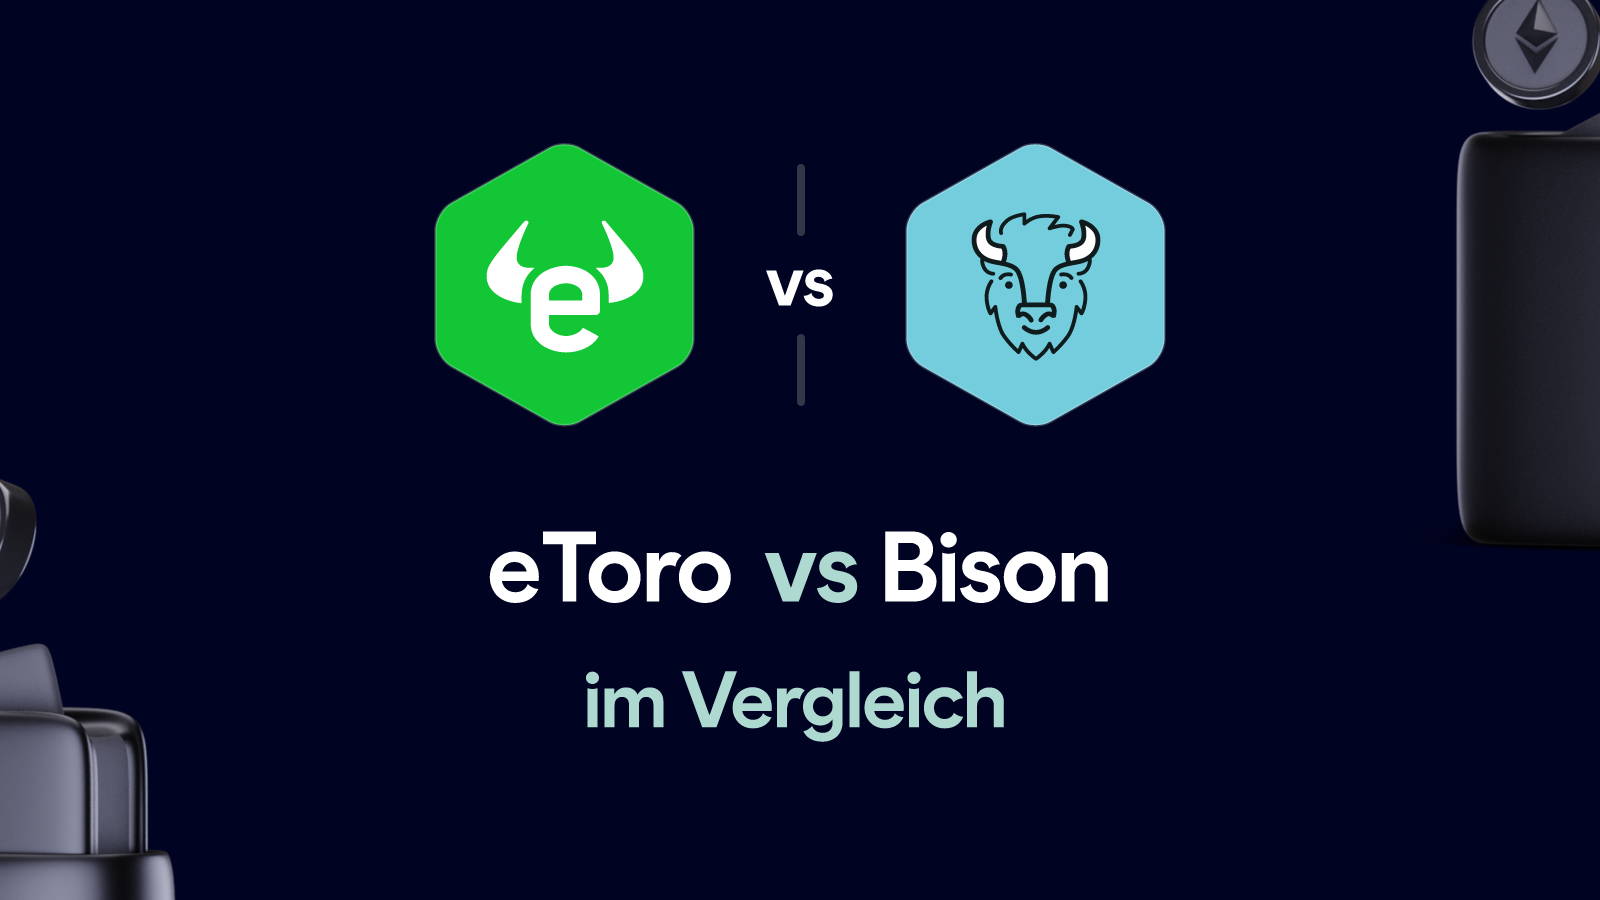 Etoro vs Bison